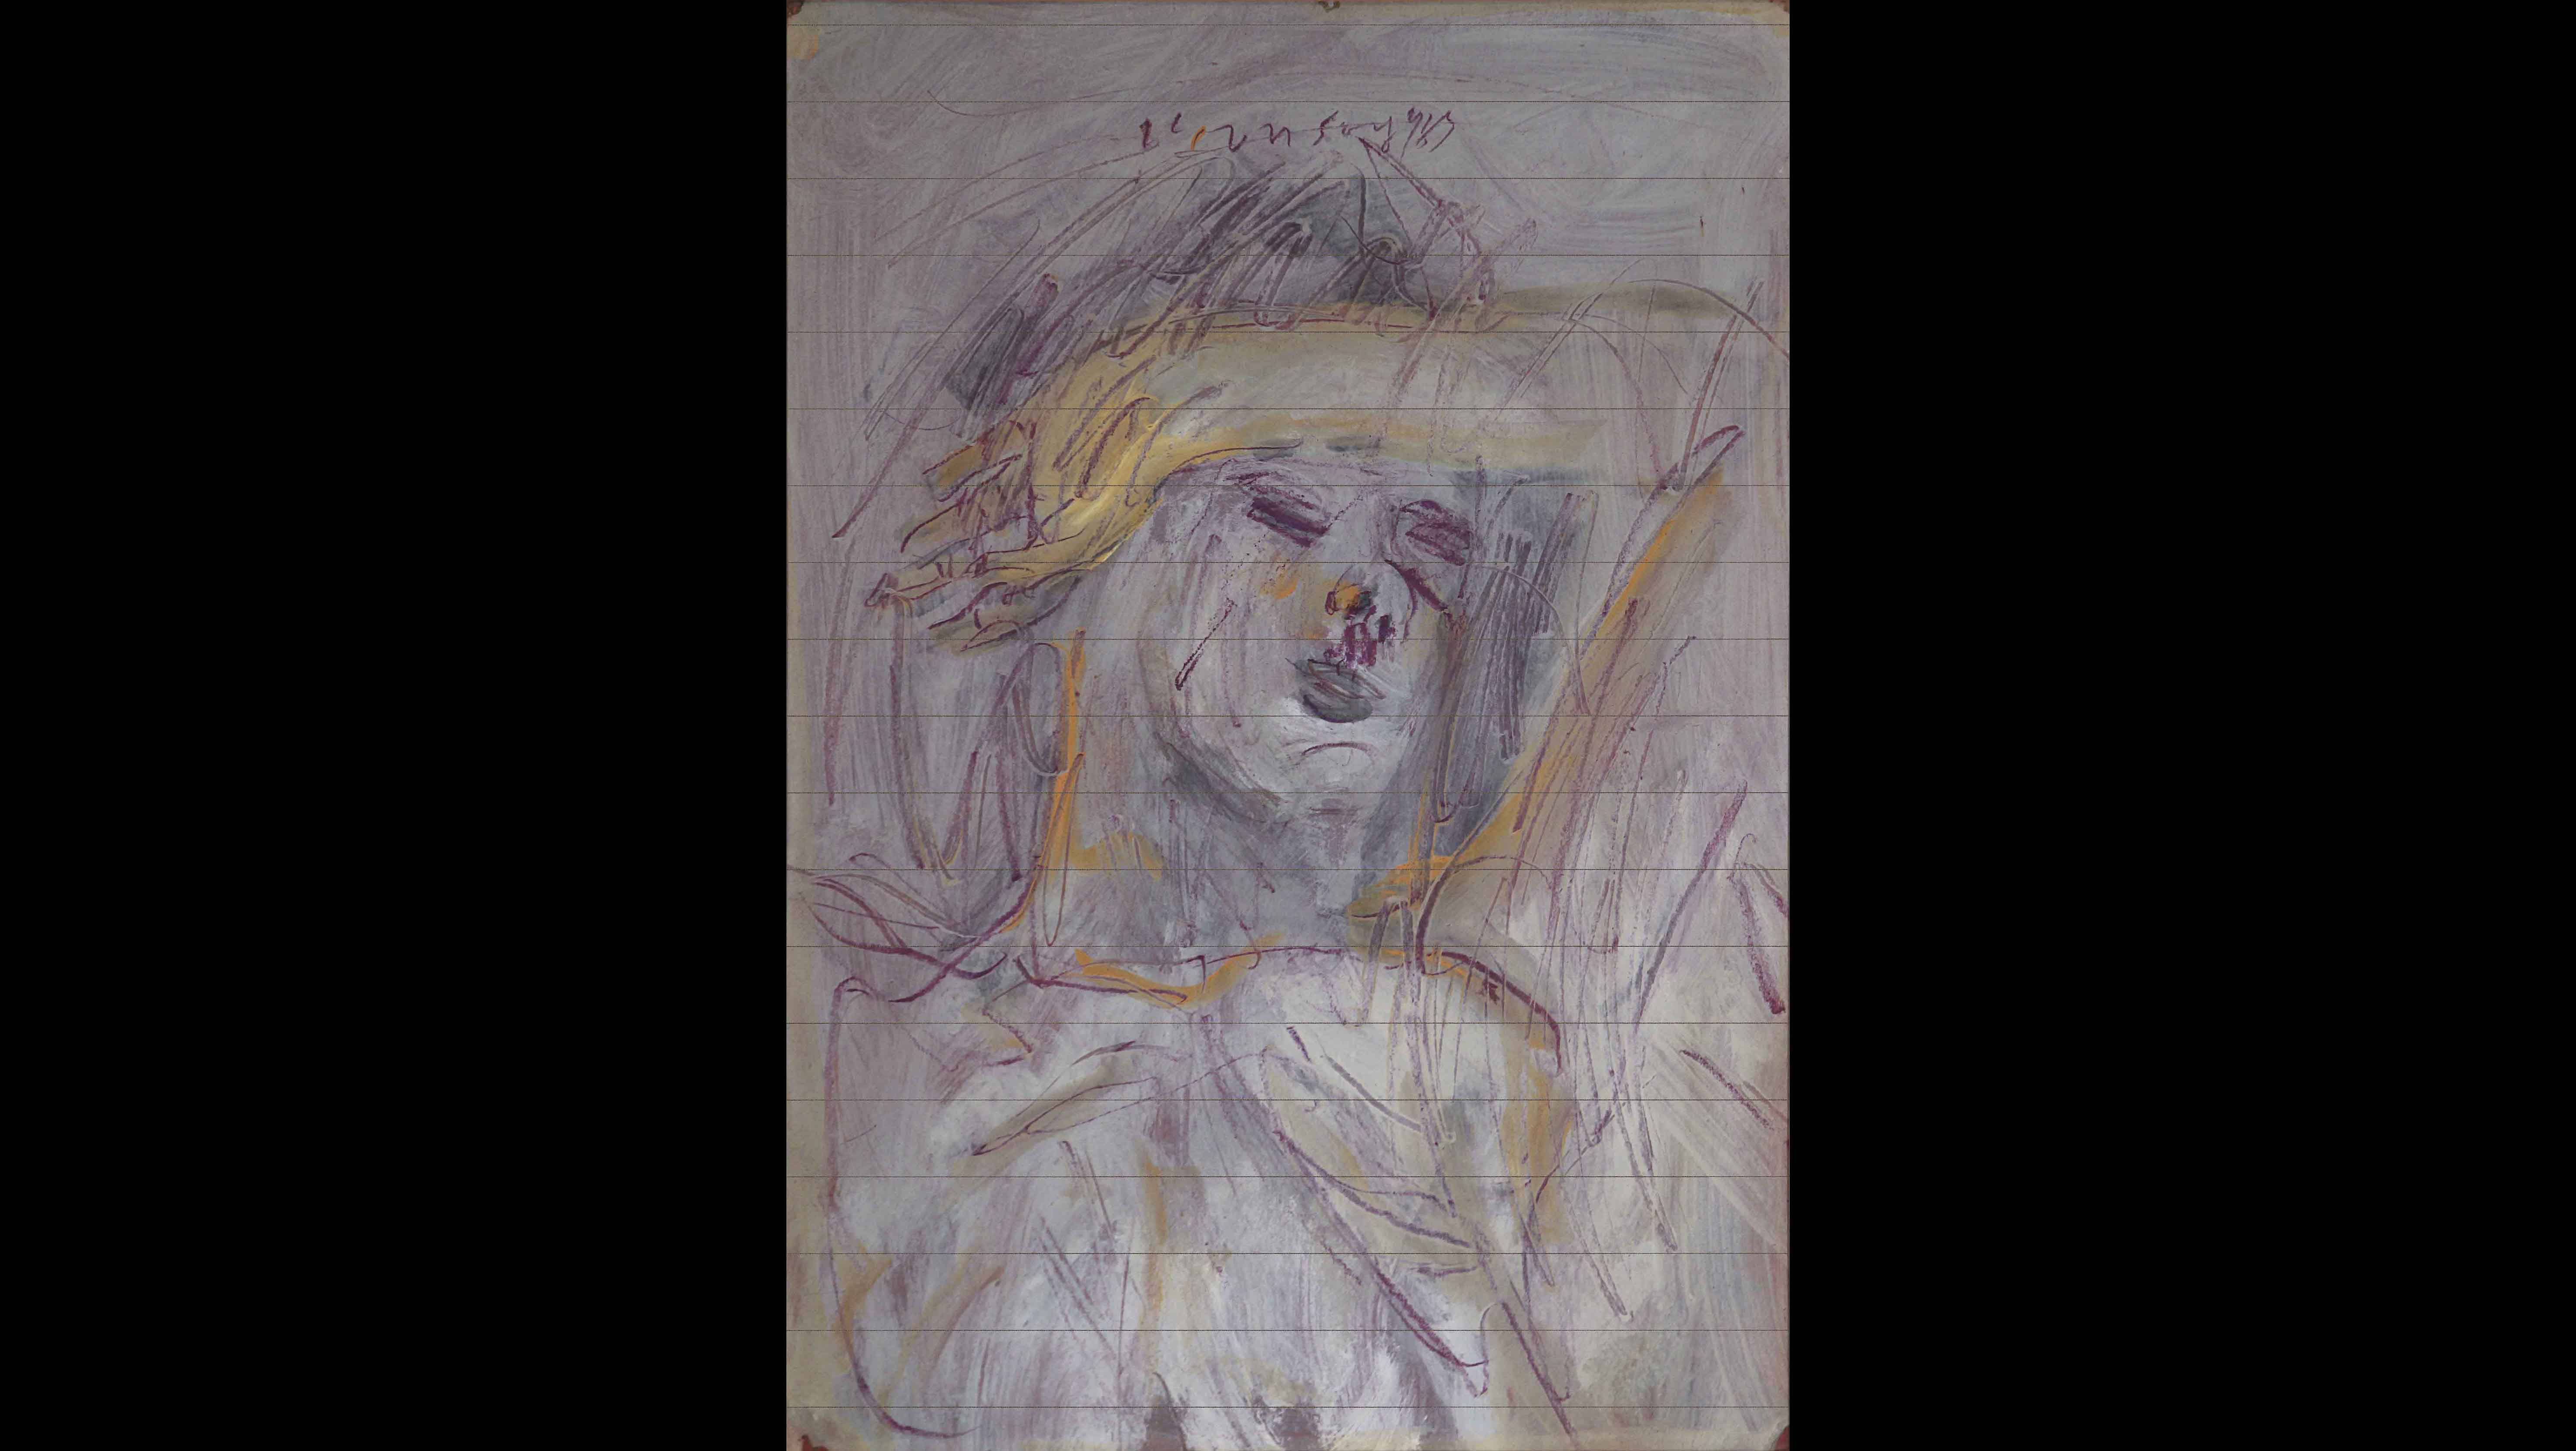 Kemal Önsoy, Untitled, 1983, mixed media on paper, 68x48 cm.